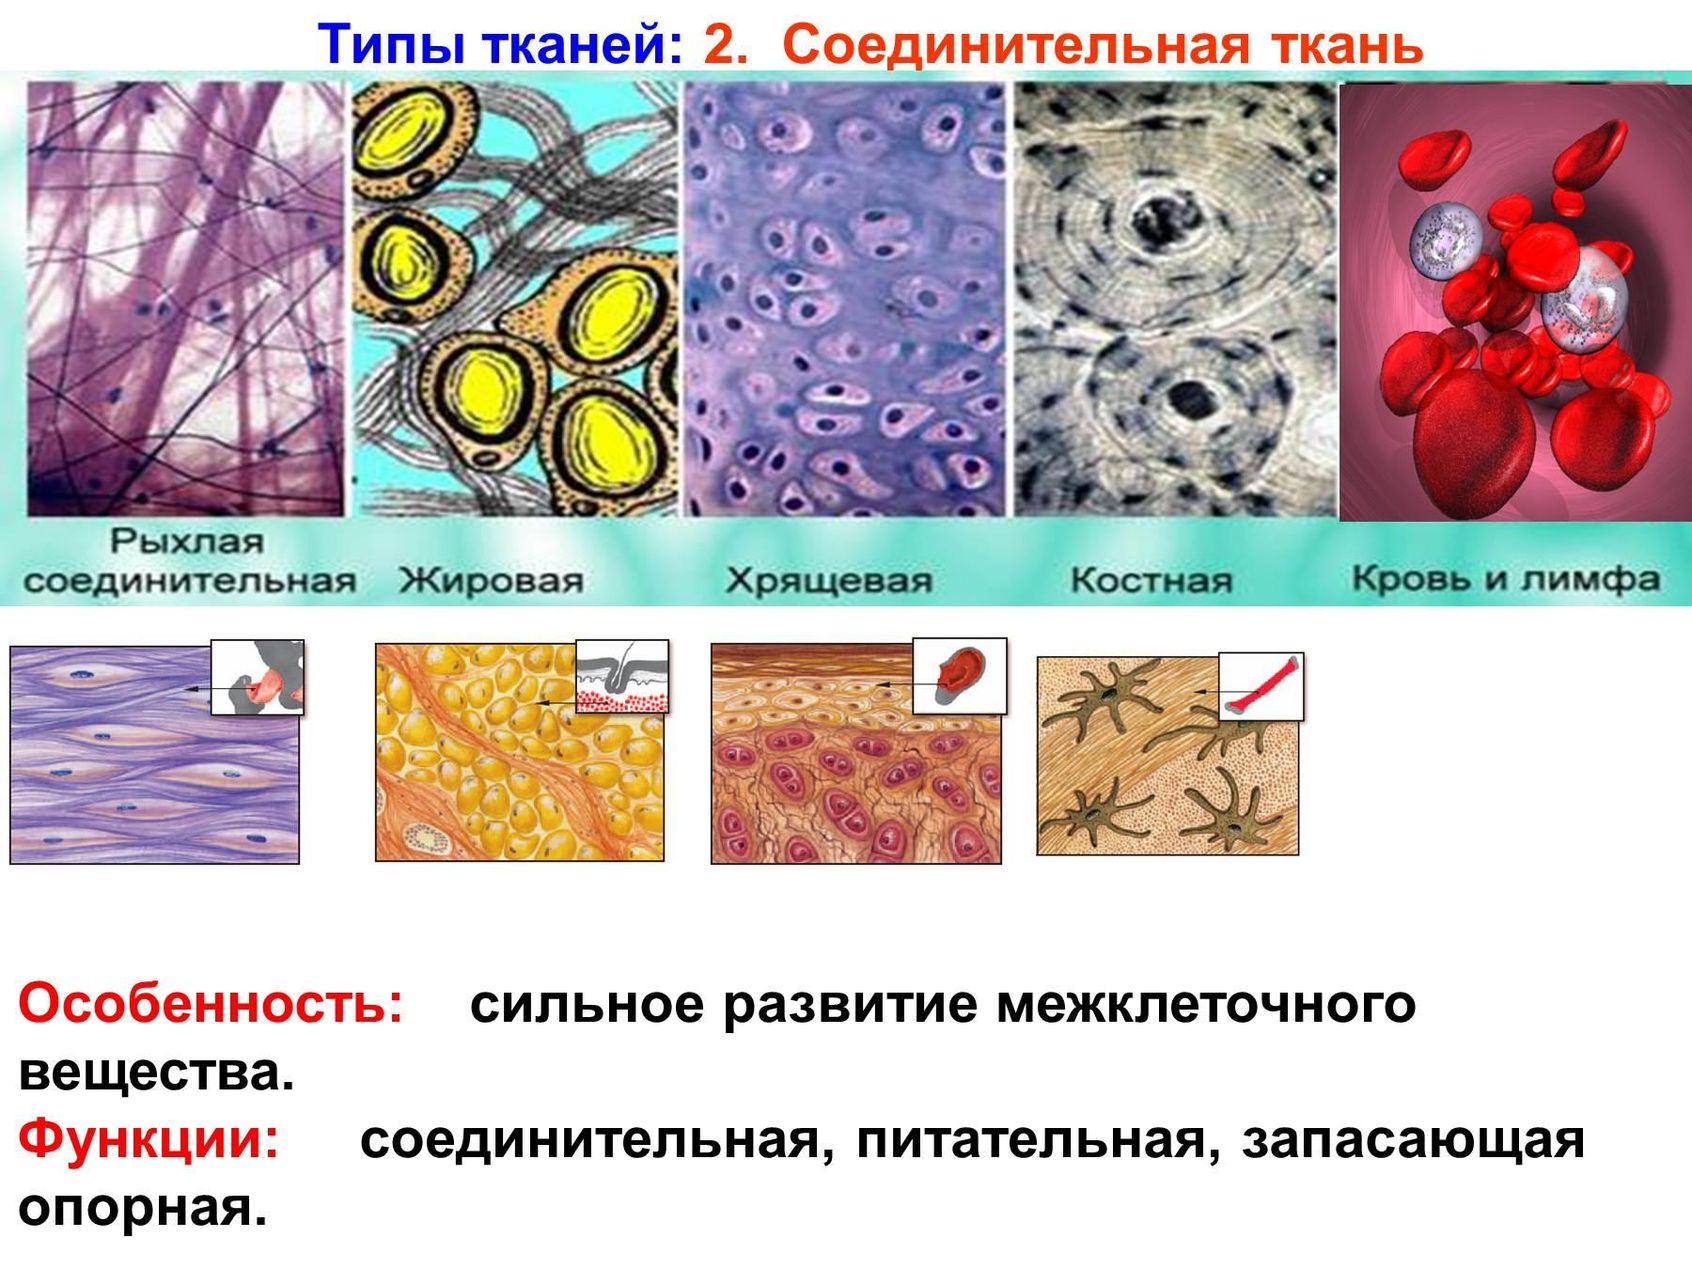 Соединительные ткани строение клеток ткани